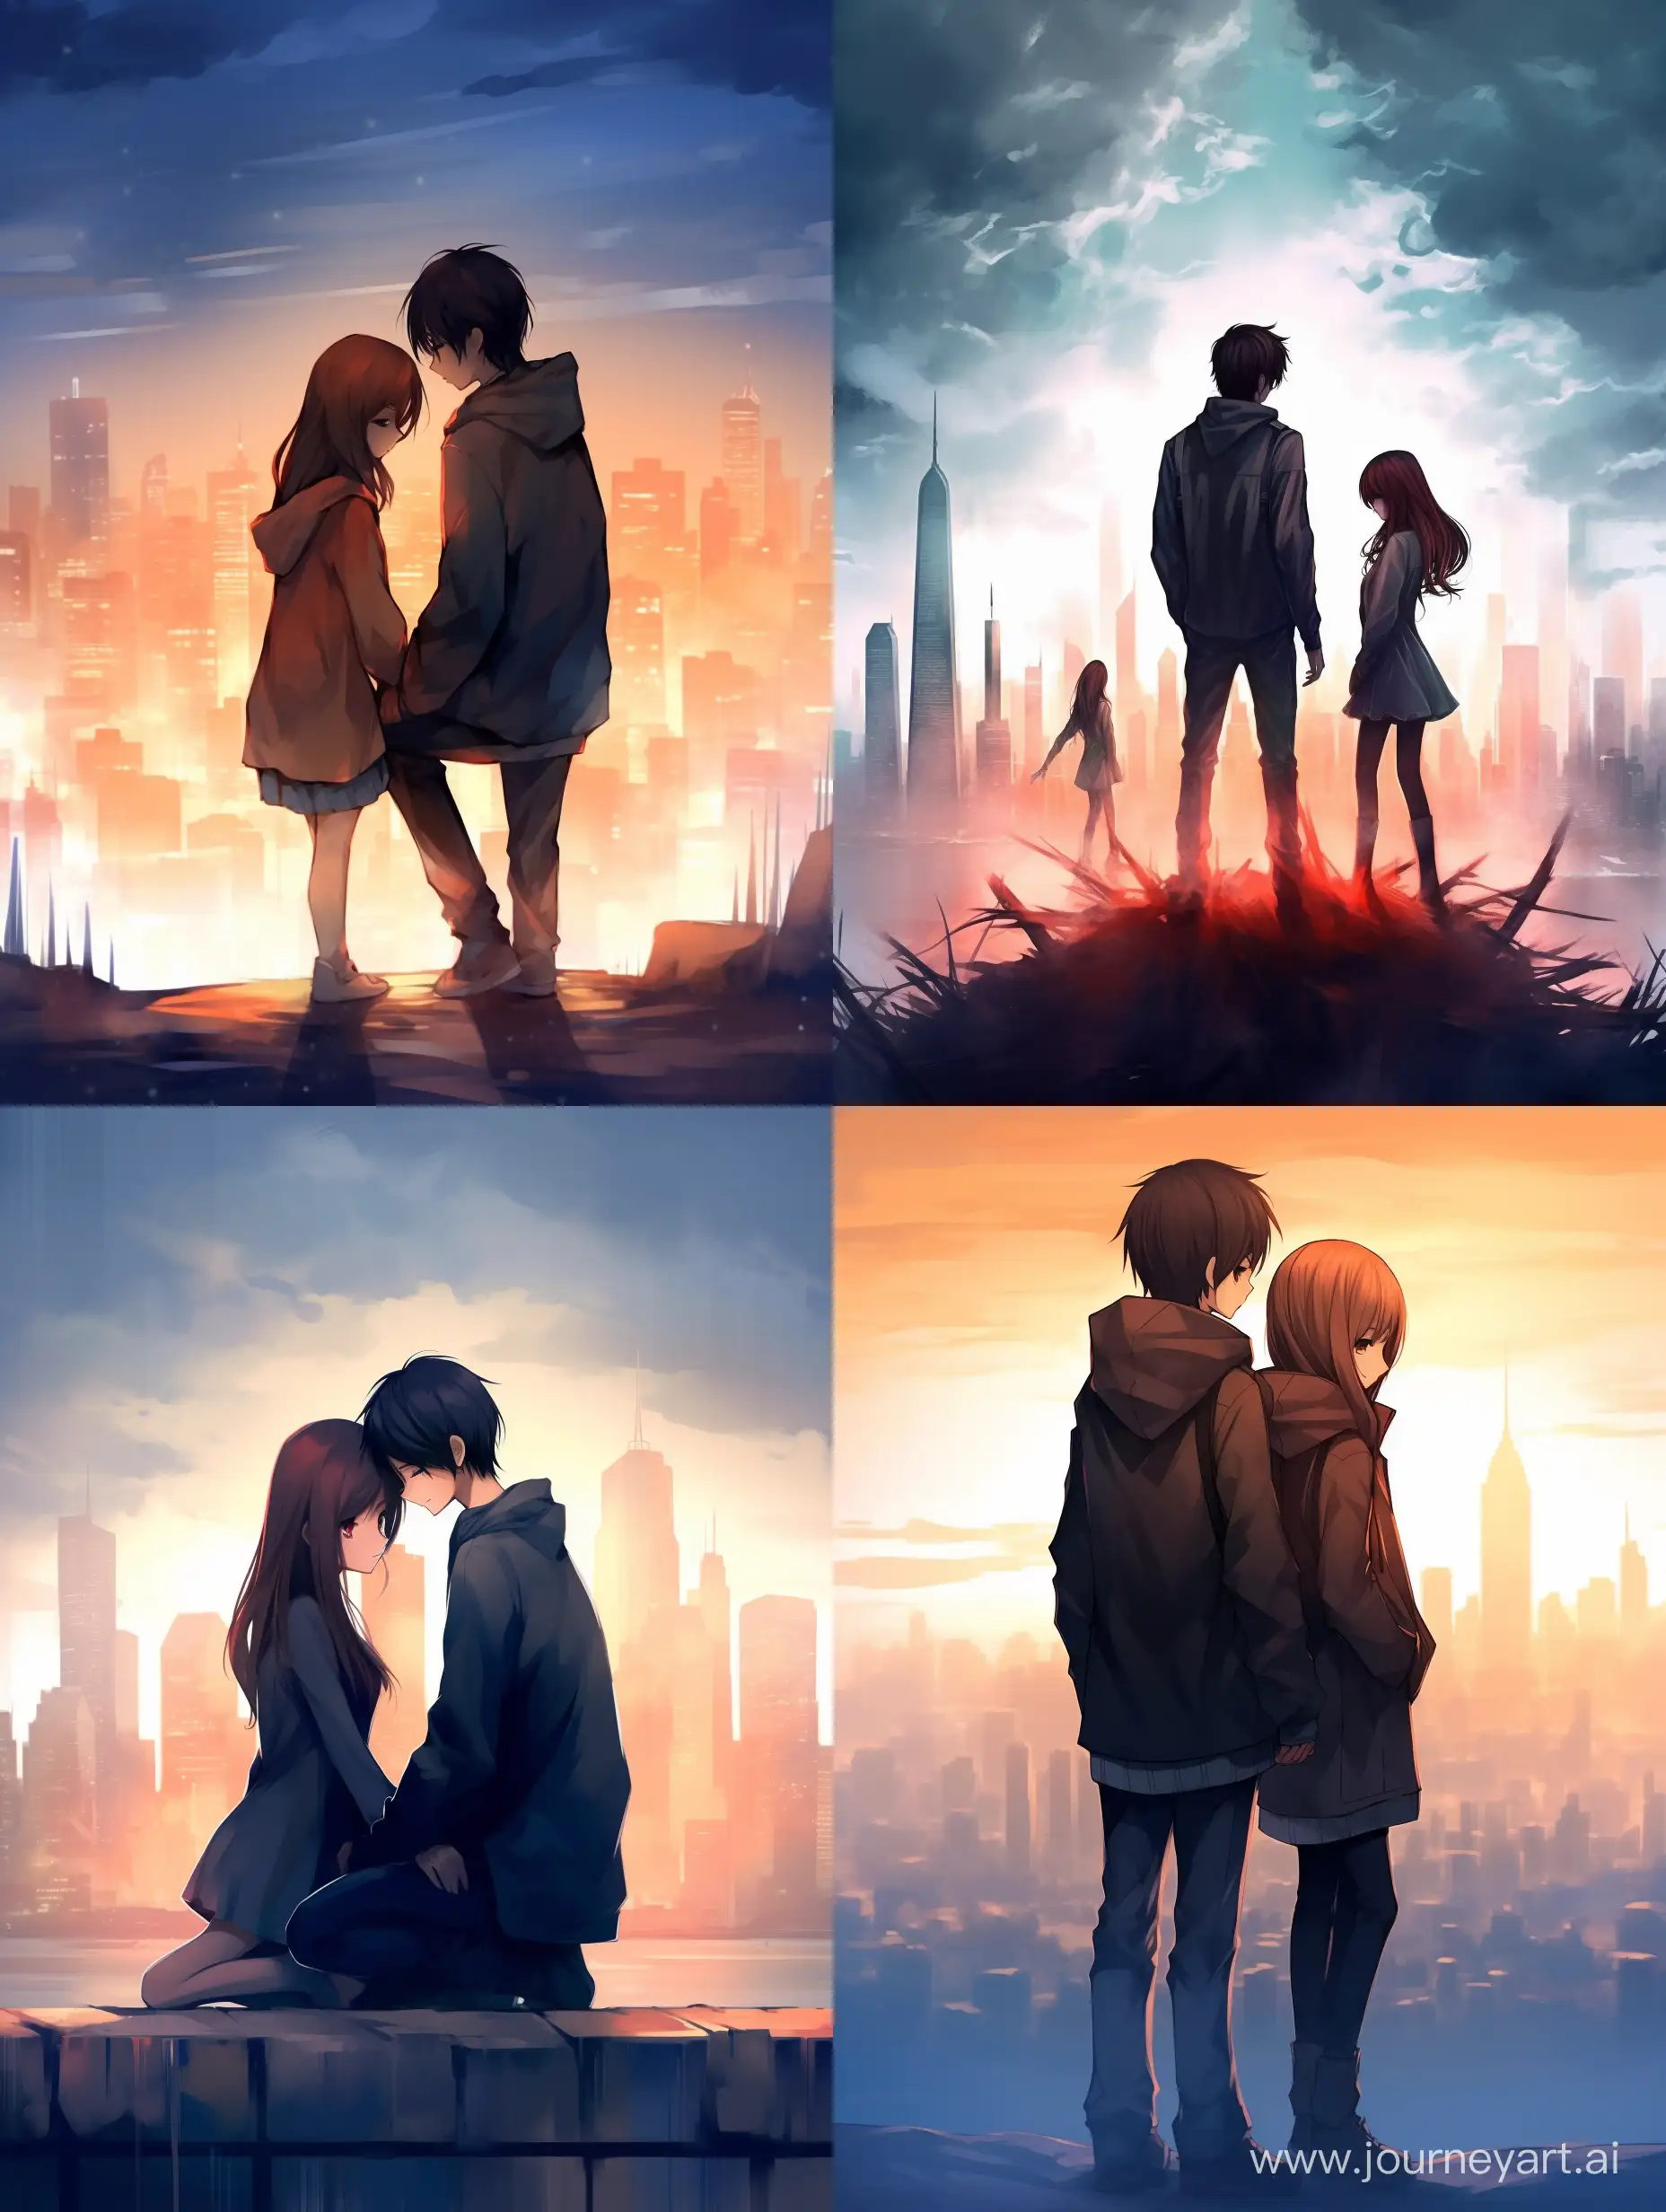 Обложка для ранобе в аниме стили на фоне Токио, впереди девушка и парень